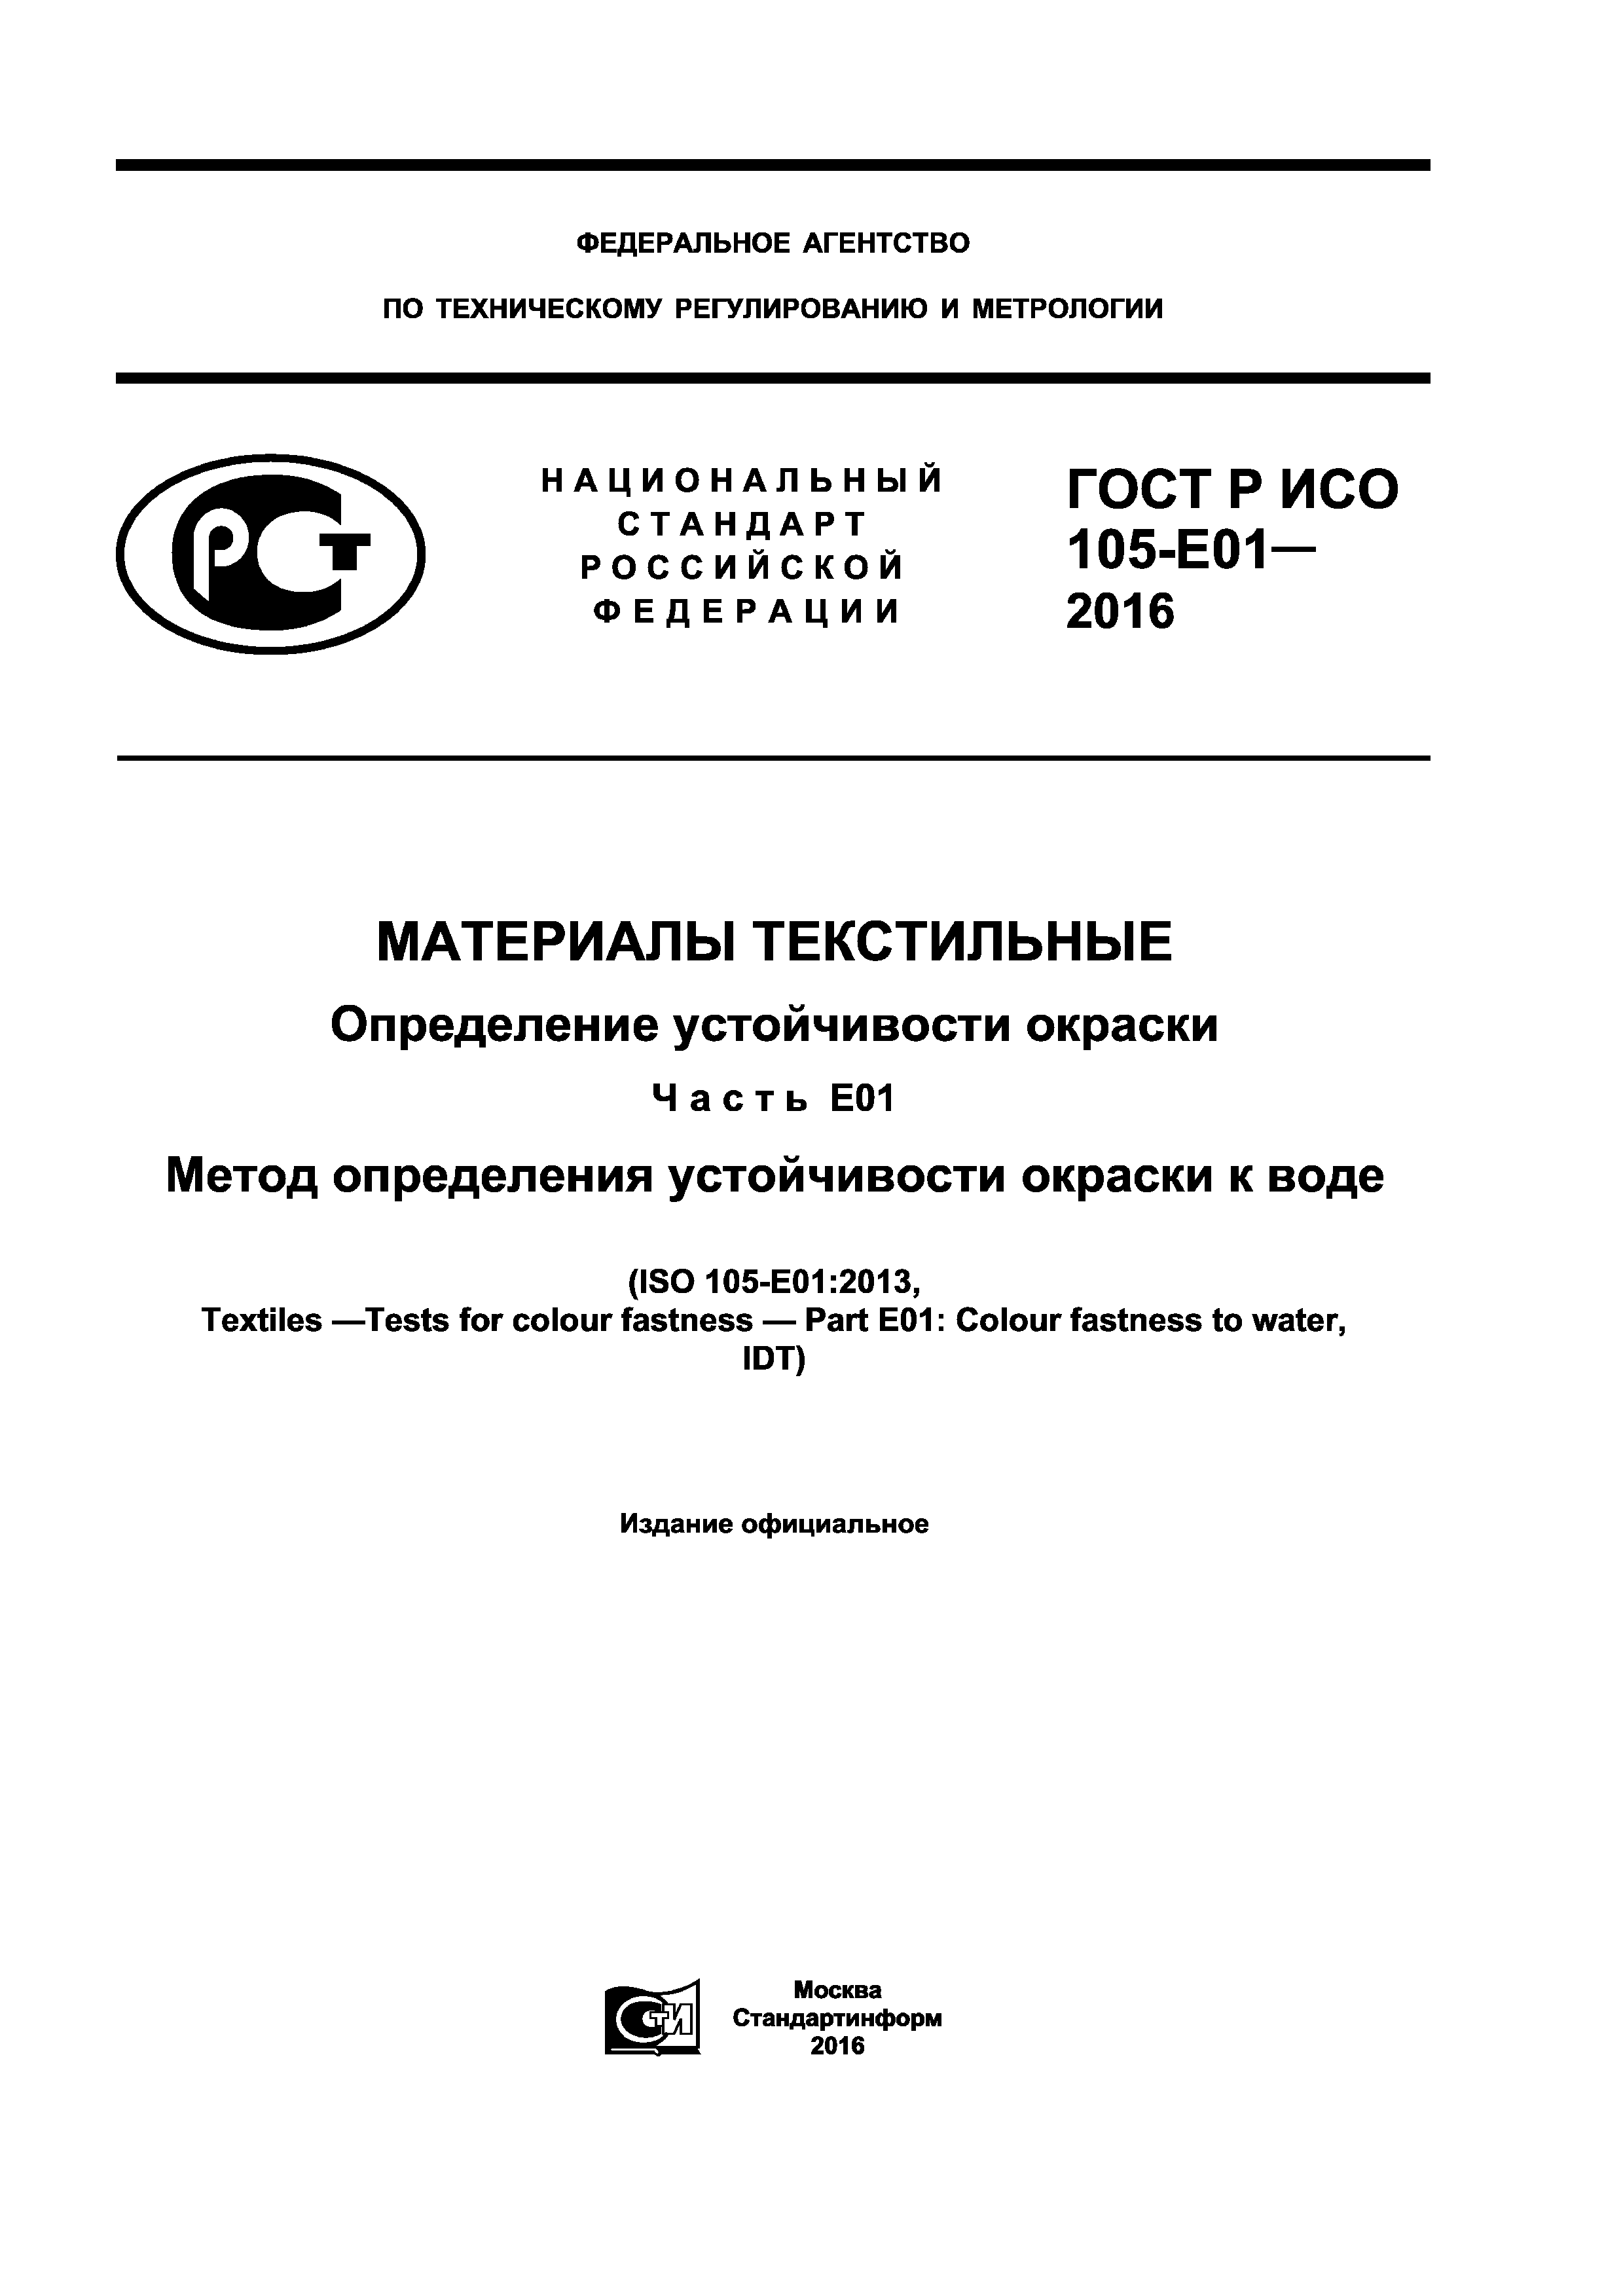 ГОСТ Р ИСО 105-E01-2016